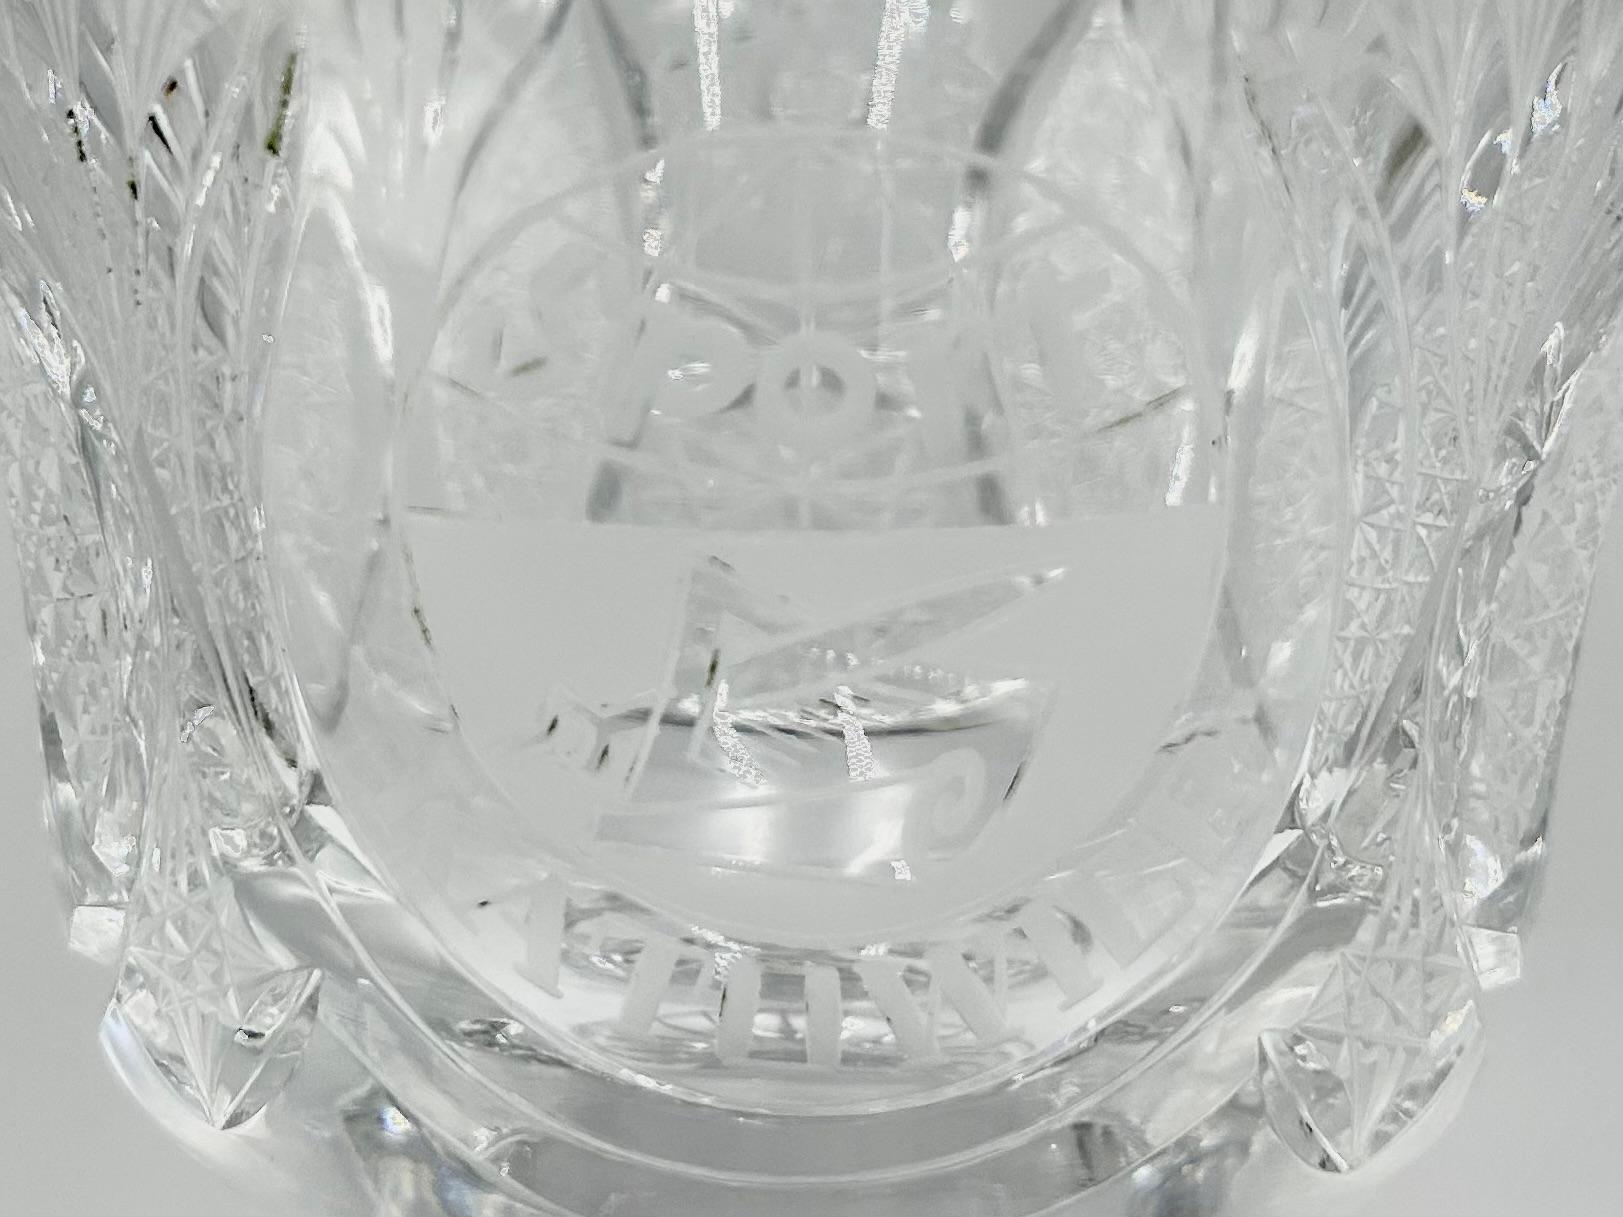 Ein Kristallbecher mit der Aufschrift SPORT KATOWICE

Hergestellt in Polen

Sehr guter Zustand ohne Schäden

Höhe: 24cm

Durchmesser der Tasse: 14 cm.